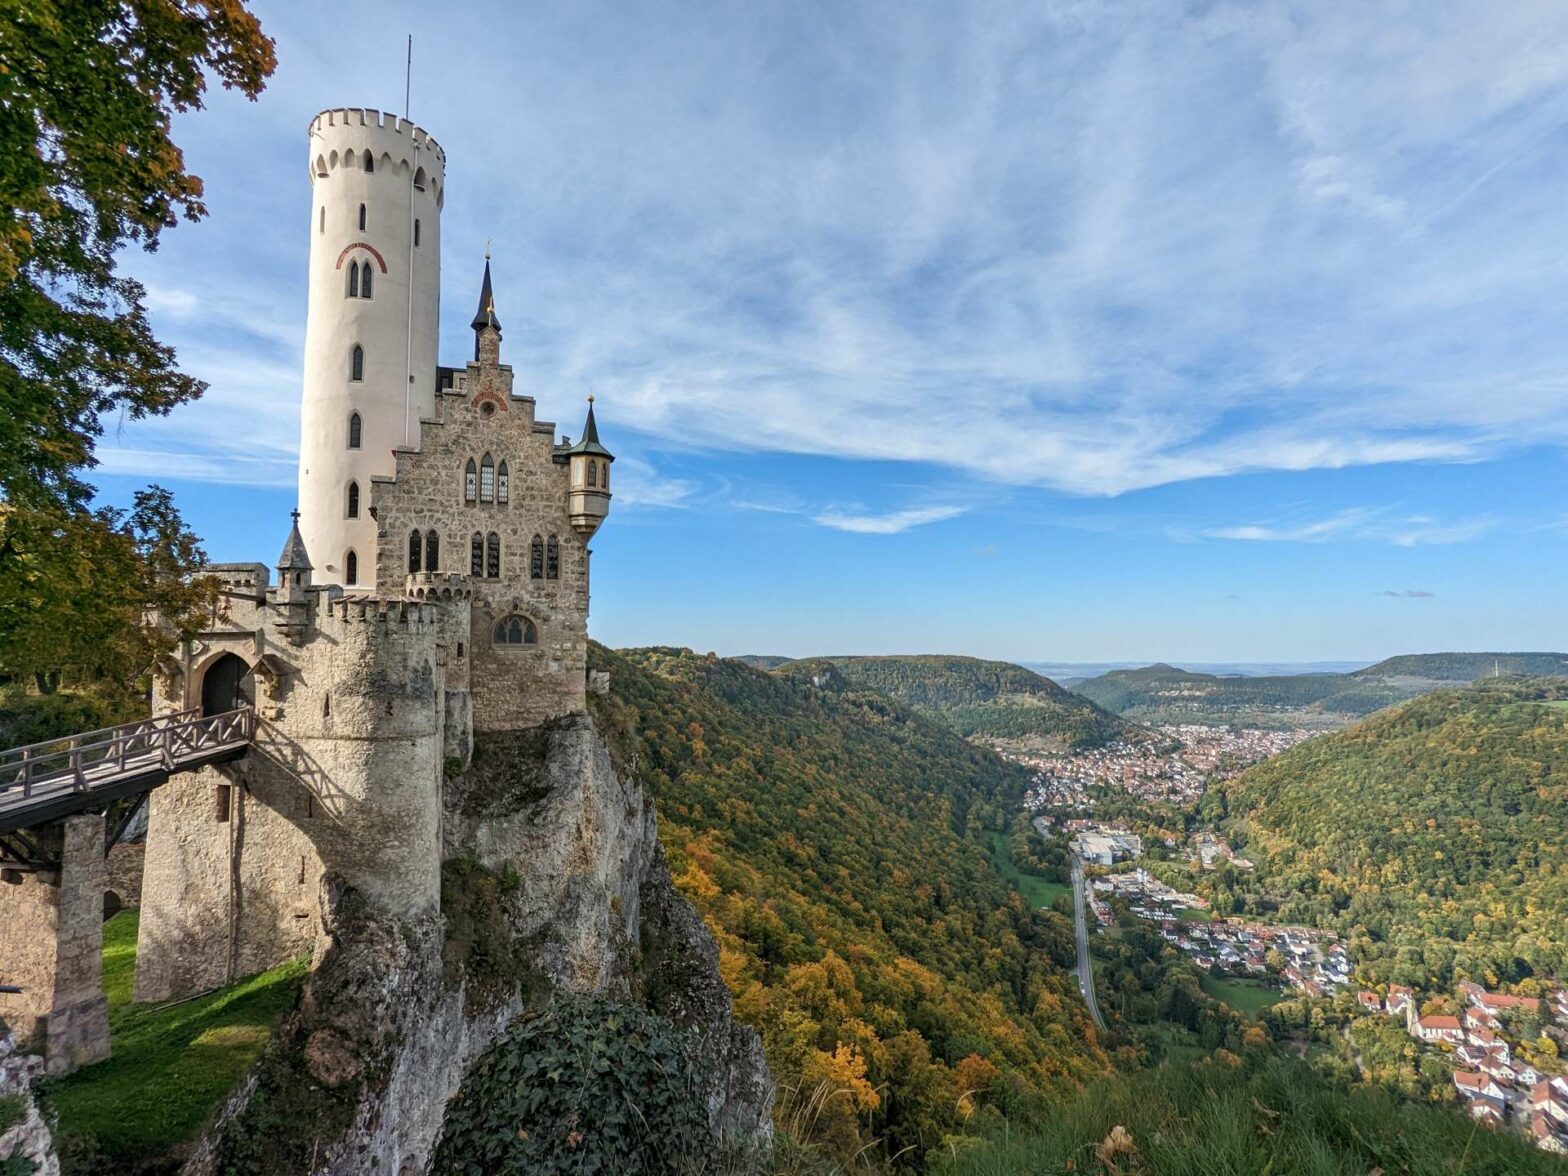 Lichtenstein Castle, Swabia, Germany